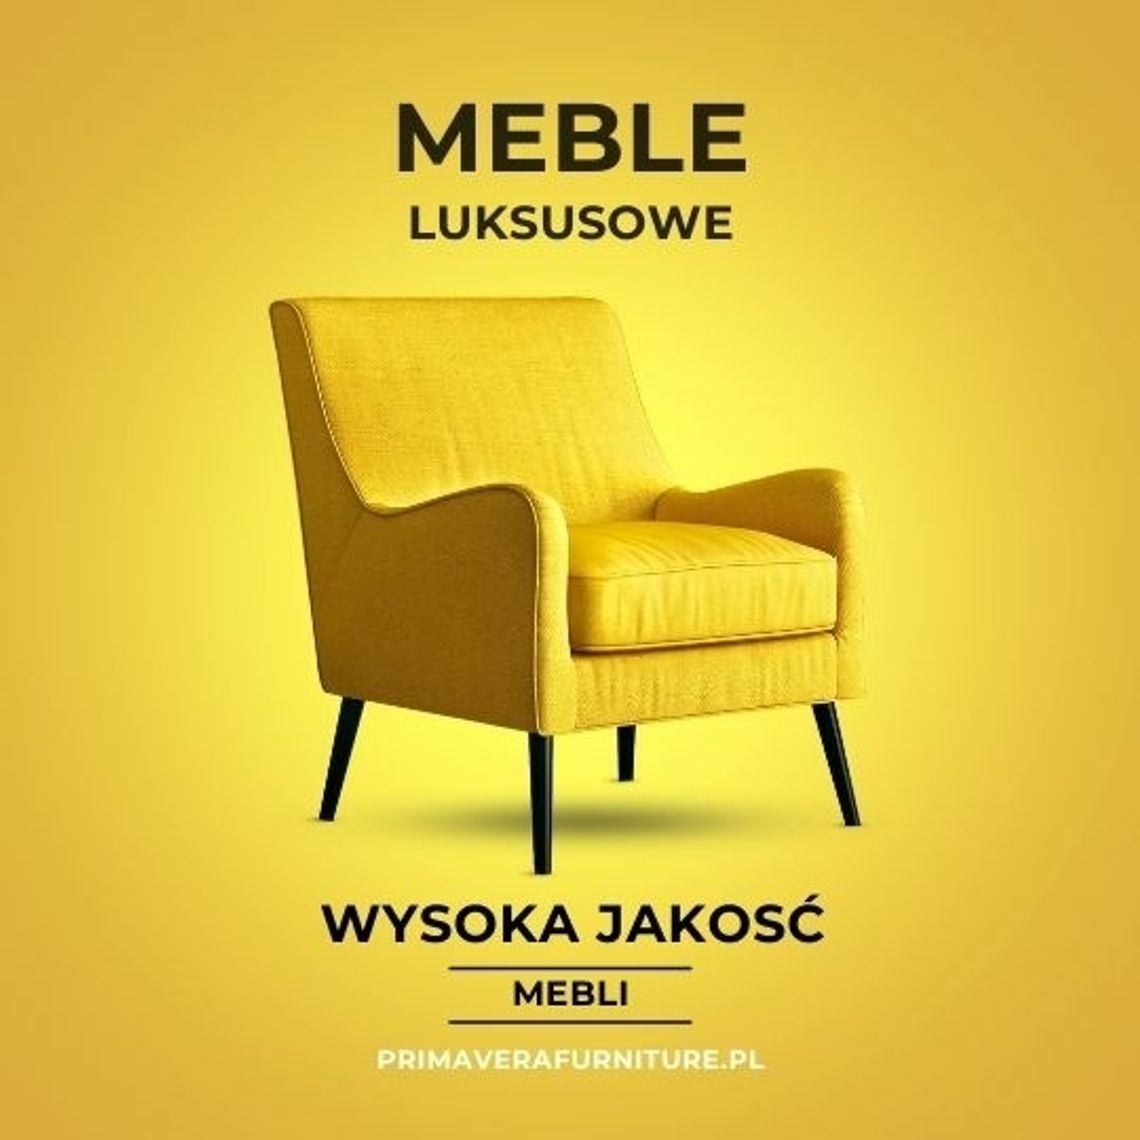 Primavera Furniture Salon Meblowy Warszawa